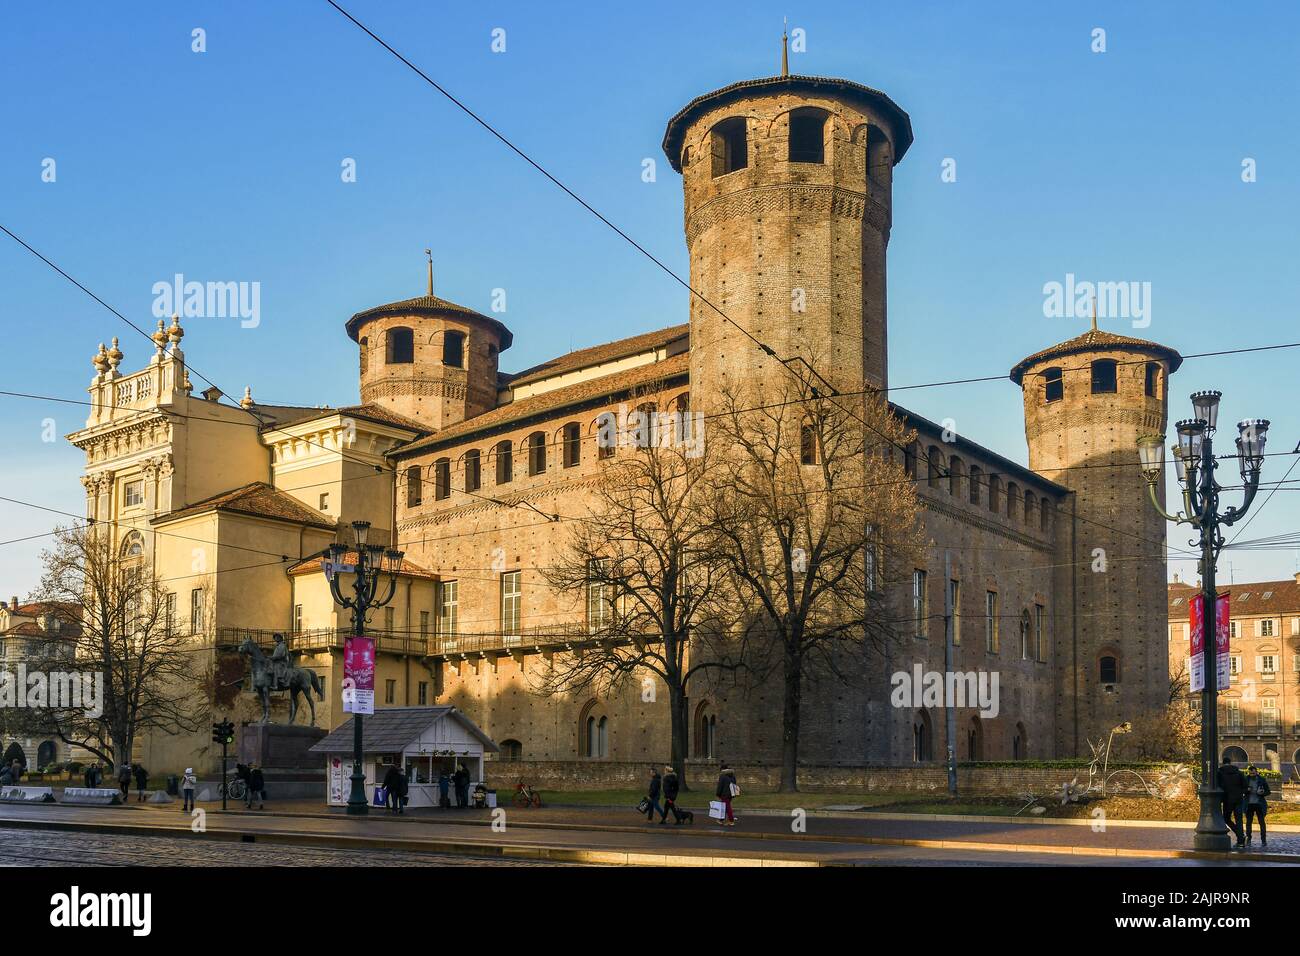 View of Palazzo Madama and Casaforte degli Acaja historic building in Piazza Castello in the historic centre of Turin in a sunny day, Piedmont, Italy Stock Photo